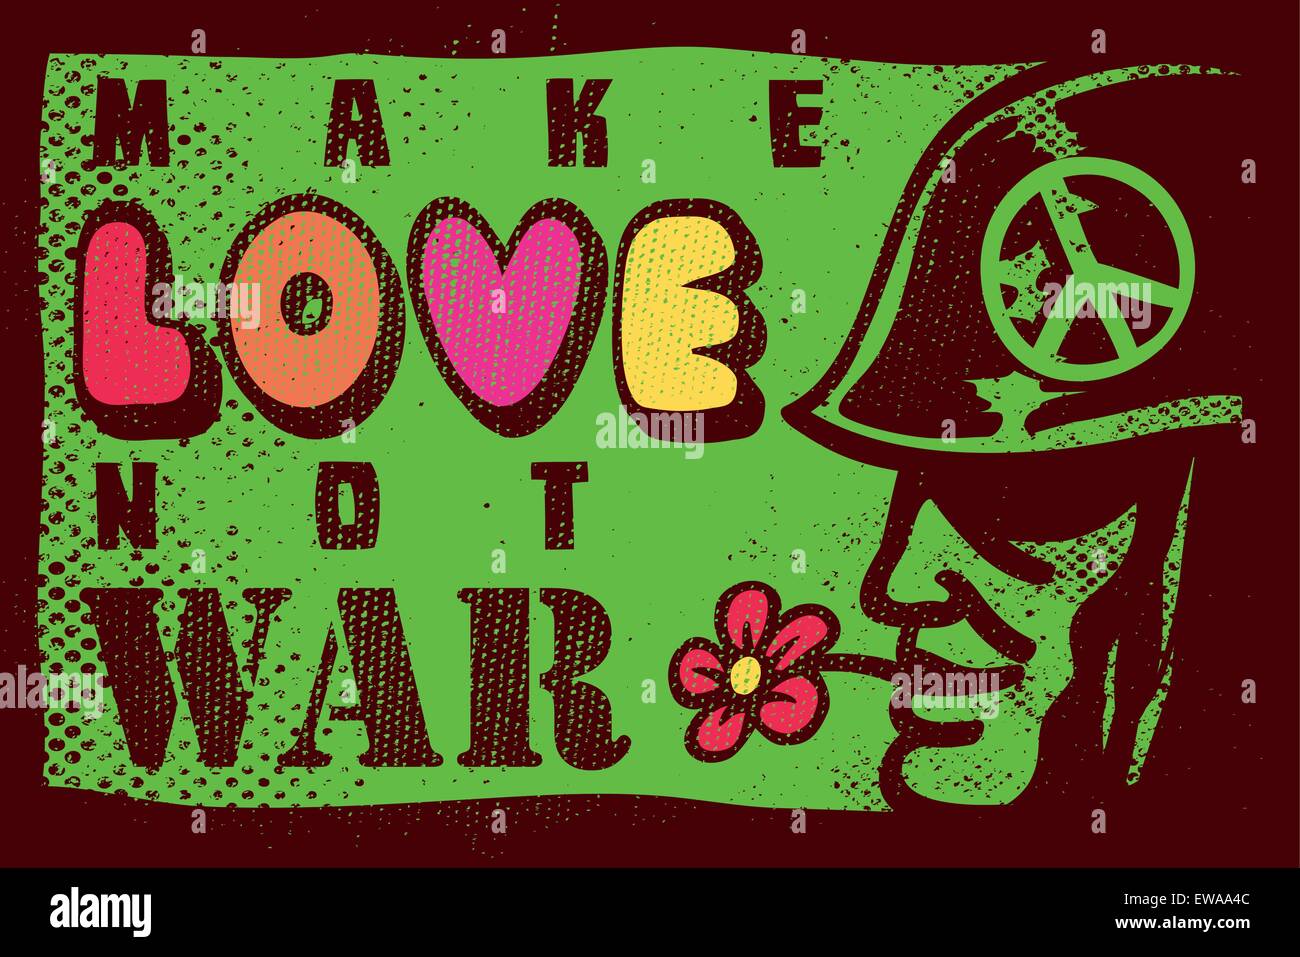 Make love not war hippie movement